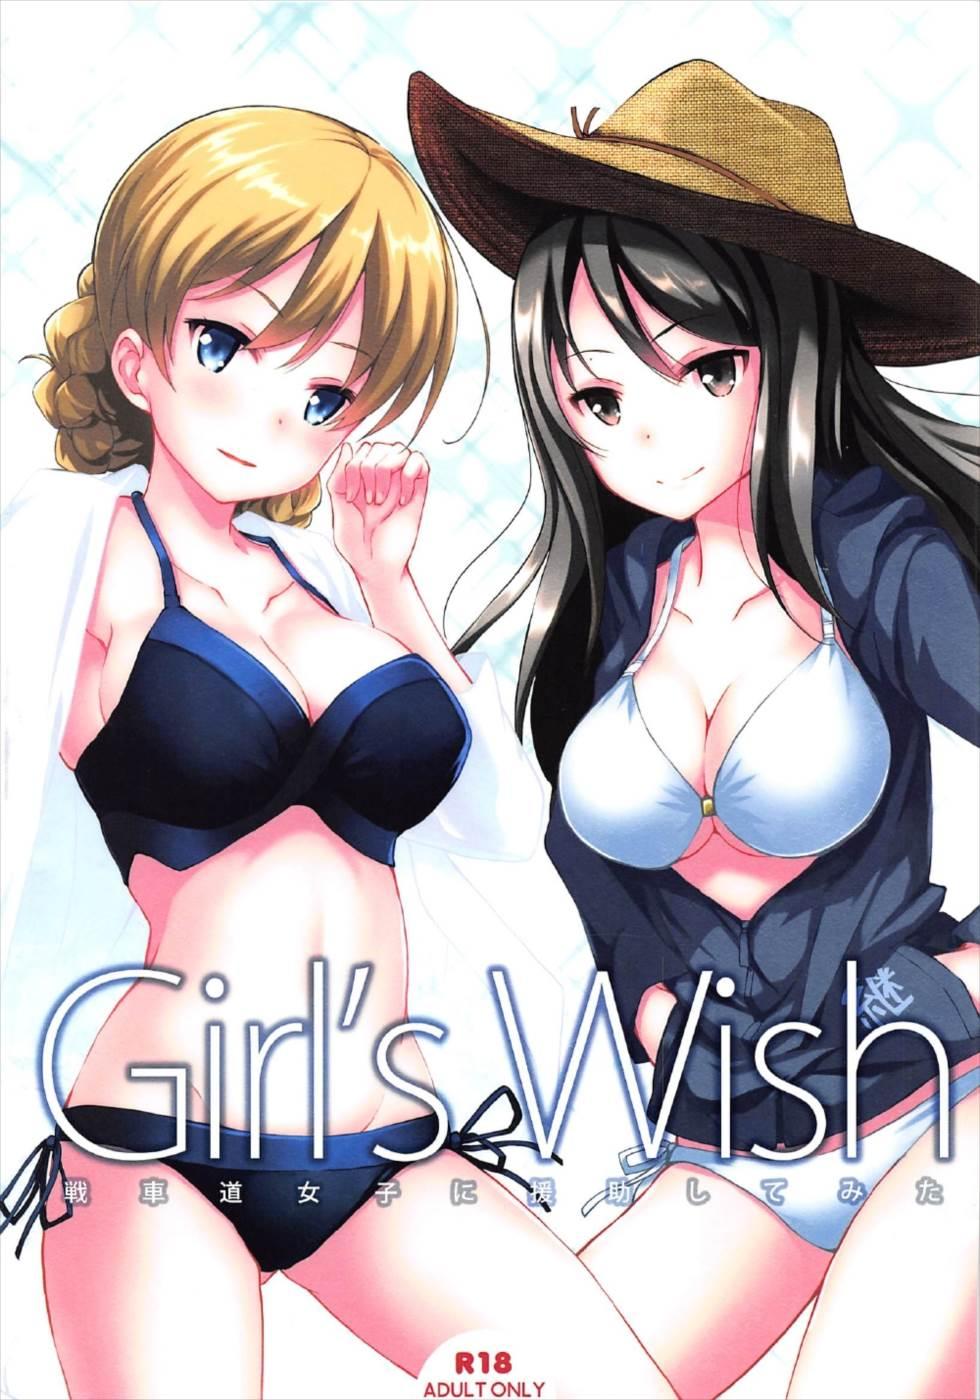 Girl’s wish 0